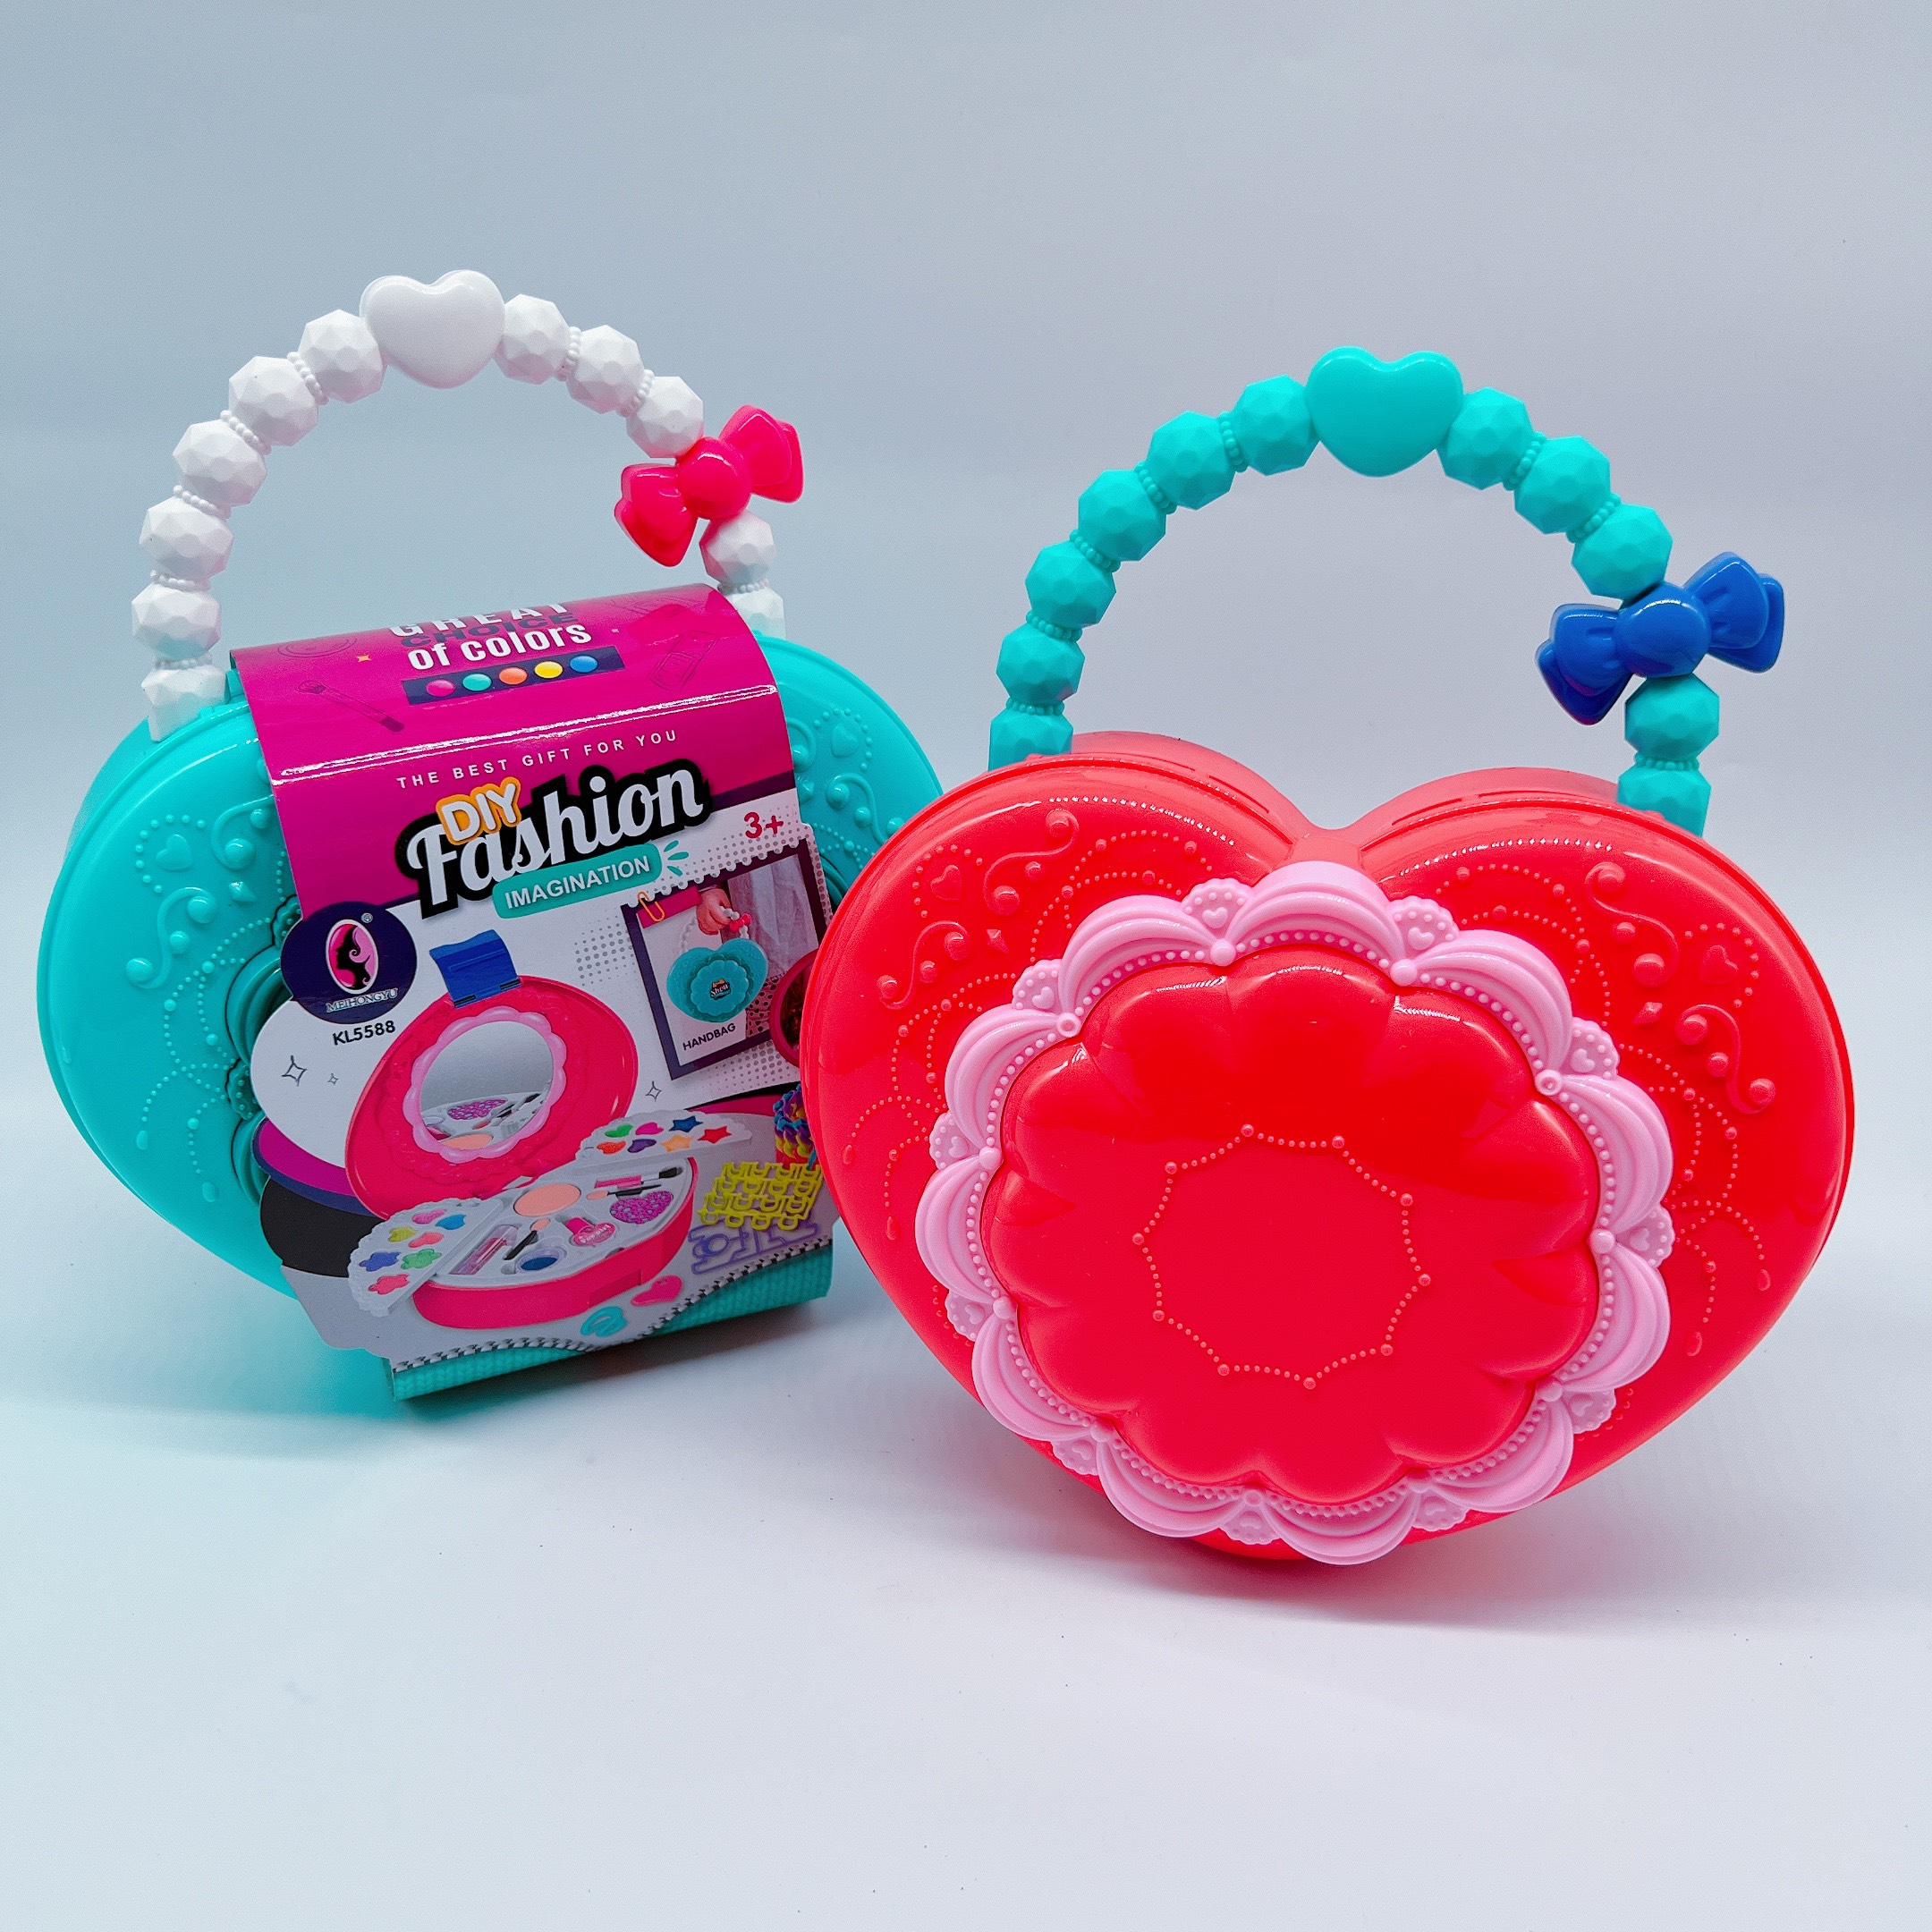 Giỏ xách phấn trang điểm thật đồ chơi cho bé, nhựa abs sêu xinh - Quà tặng thích thú cho bé gái